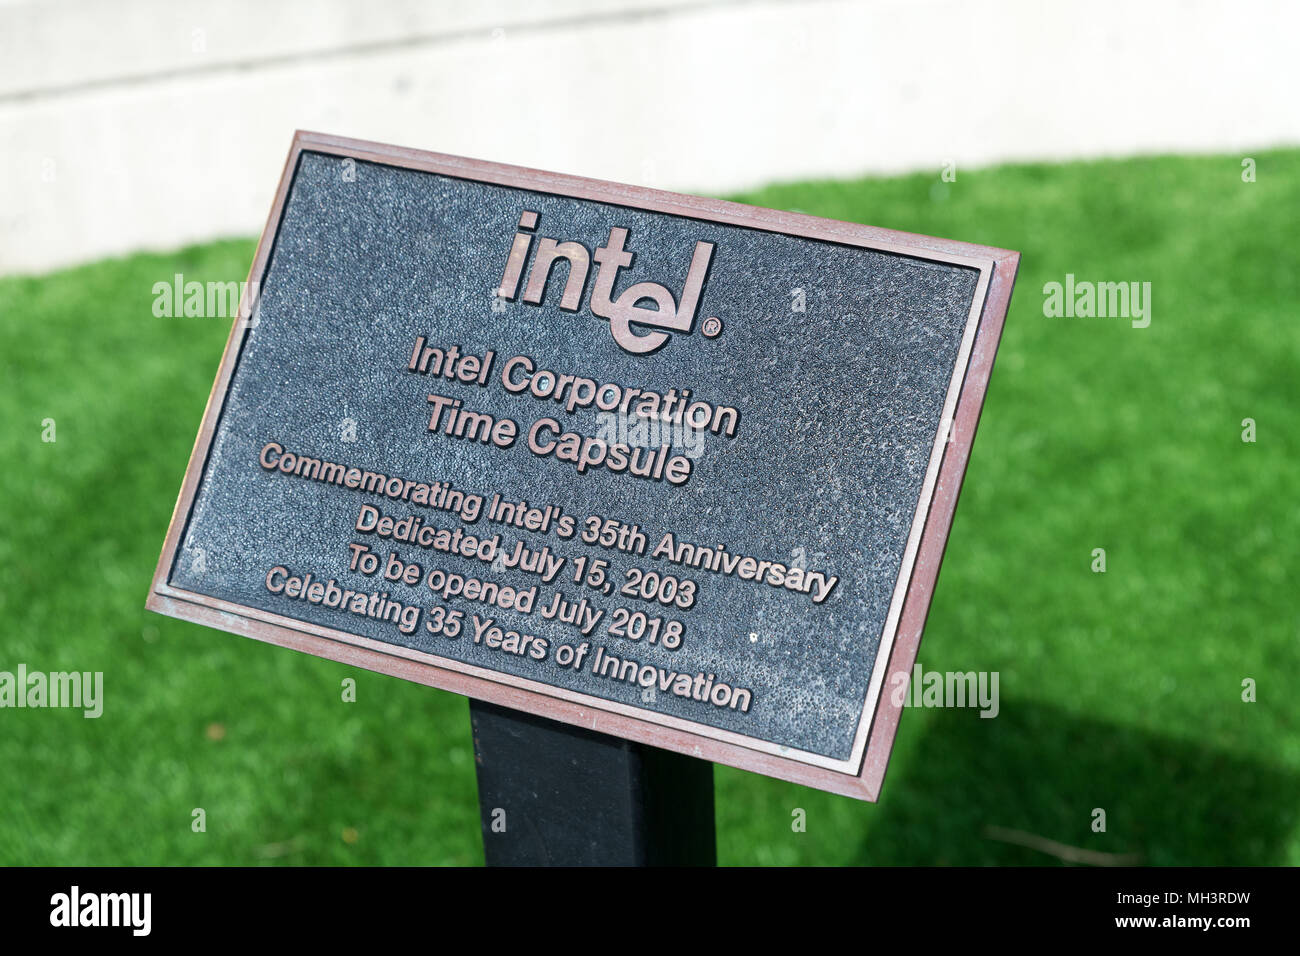 Santa Clara, Kalifornien, USA - 29. April 2018: Intel Corporation Time Capsule feiert 35 Jahre Innovation im weltweit Unternehmen Headquarte Stockfoto